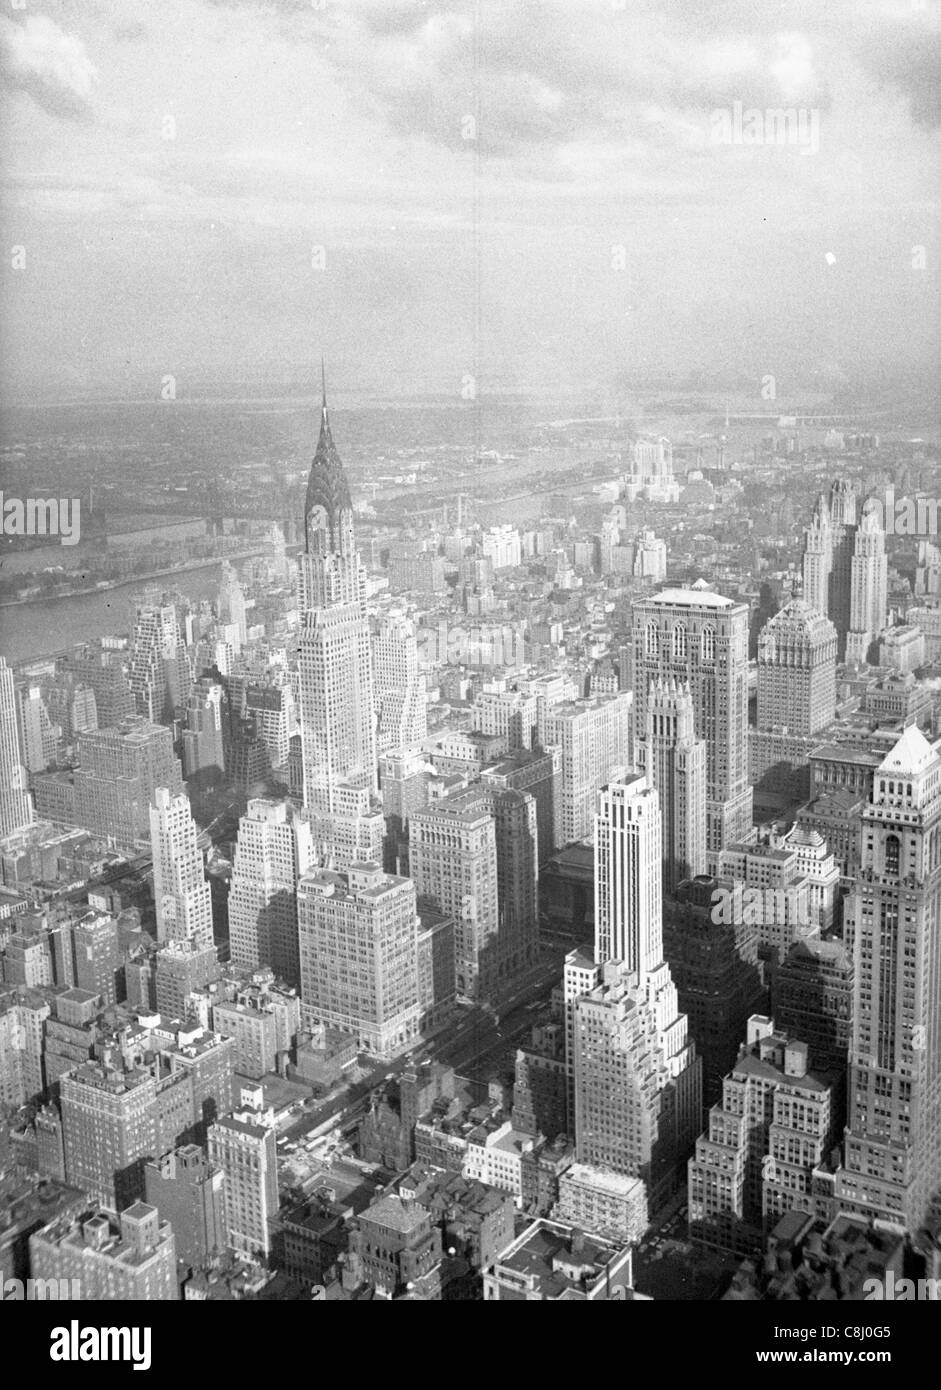 New York City von Empire State Building im August Stadtbild 1948 Schwarz-Weiß-Ansicht Stadtgebiet 1940 Nachkriegszeit manhattan Architektur Amerika gesehen Stockfoto